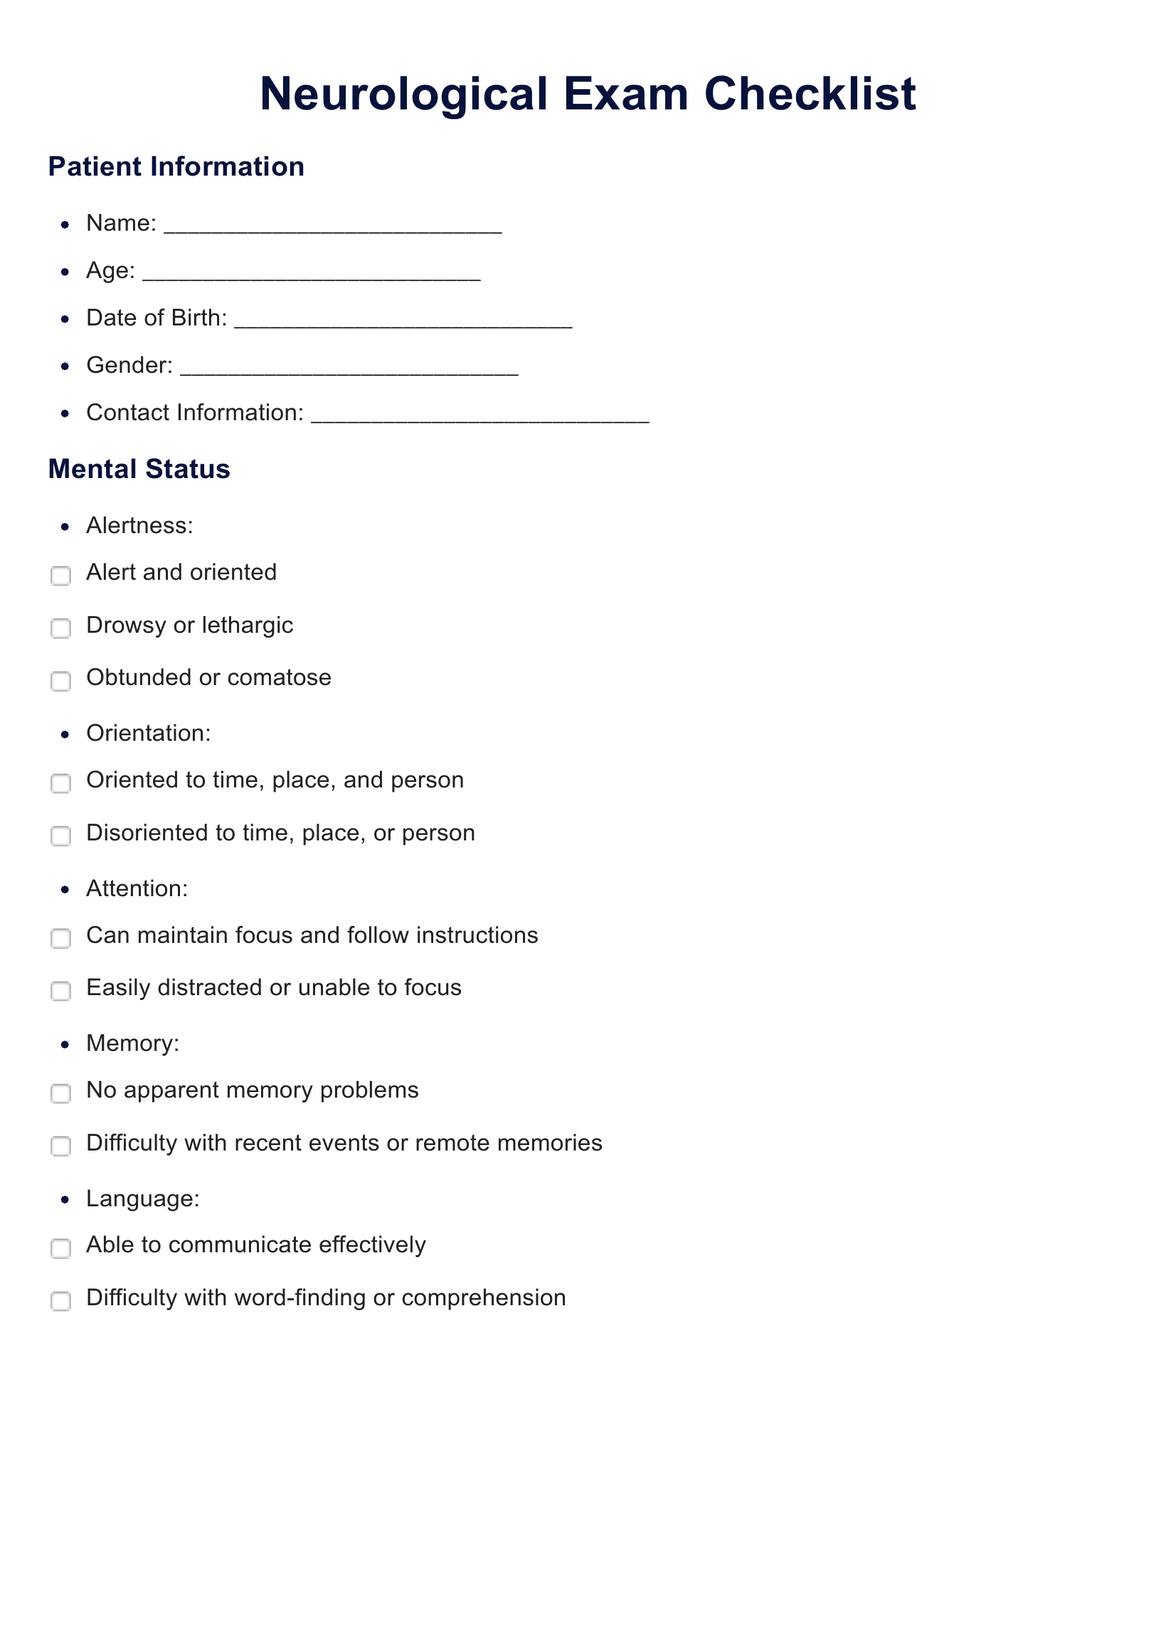 Neurological Exam Checklist PDF Example